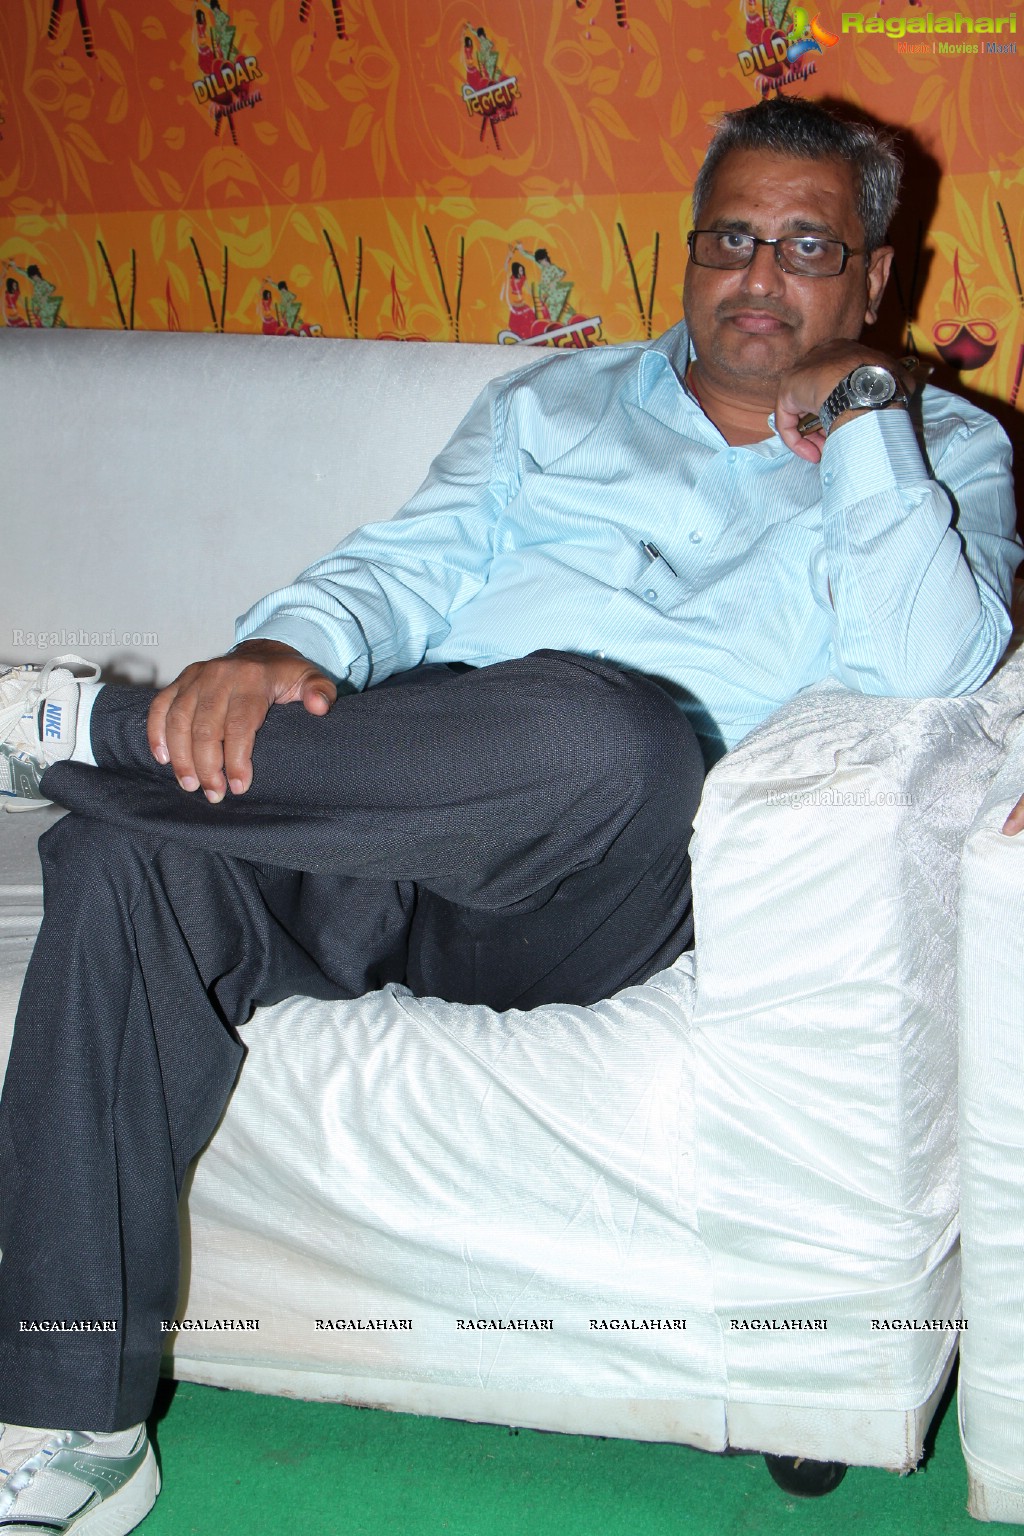 Dildar Dandiya 2014